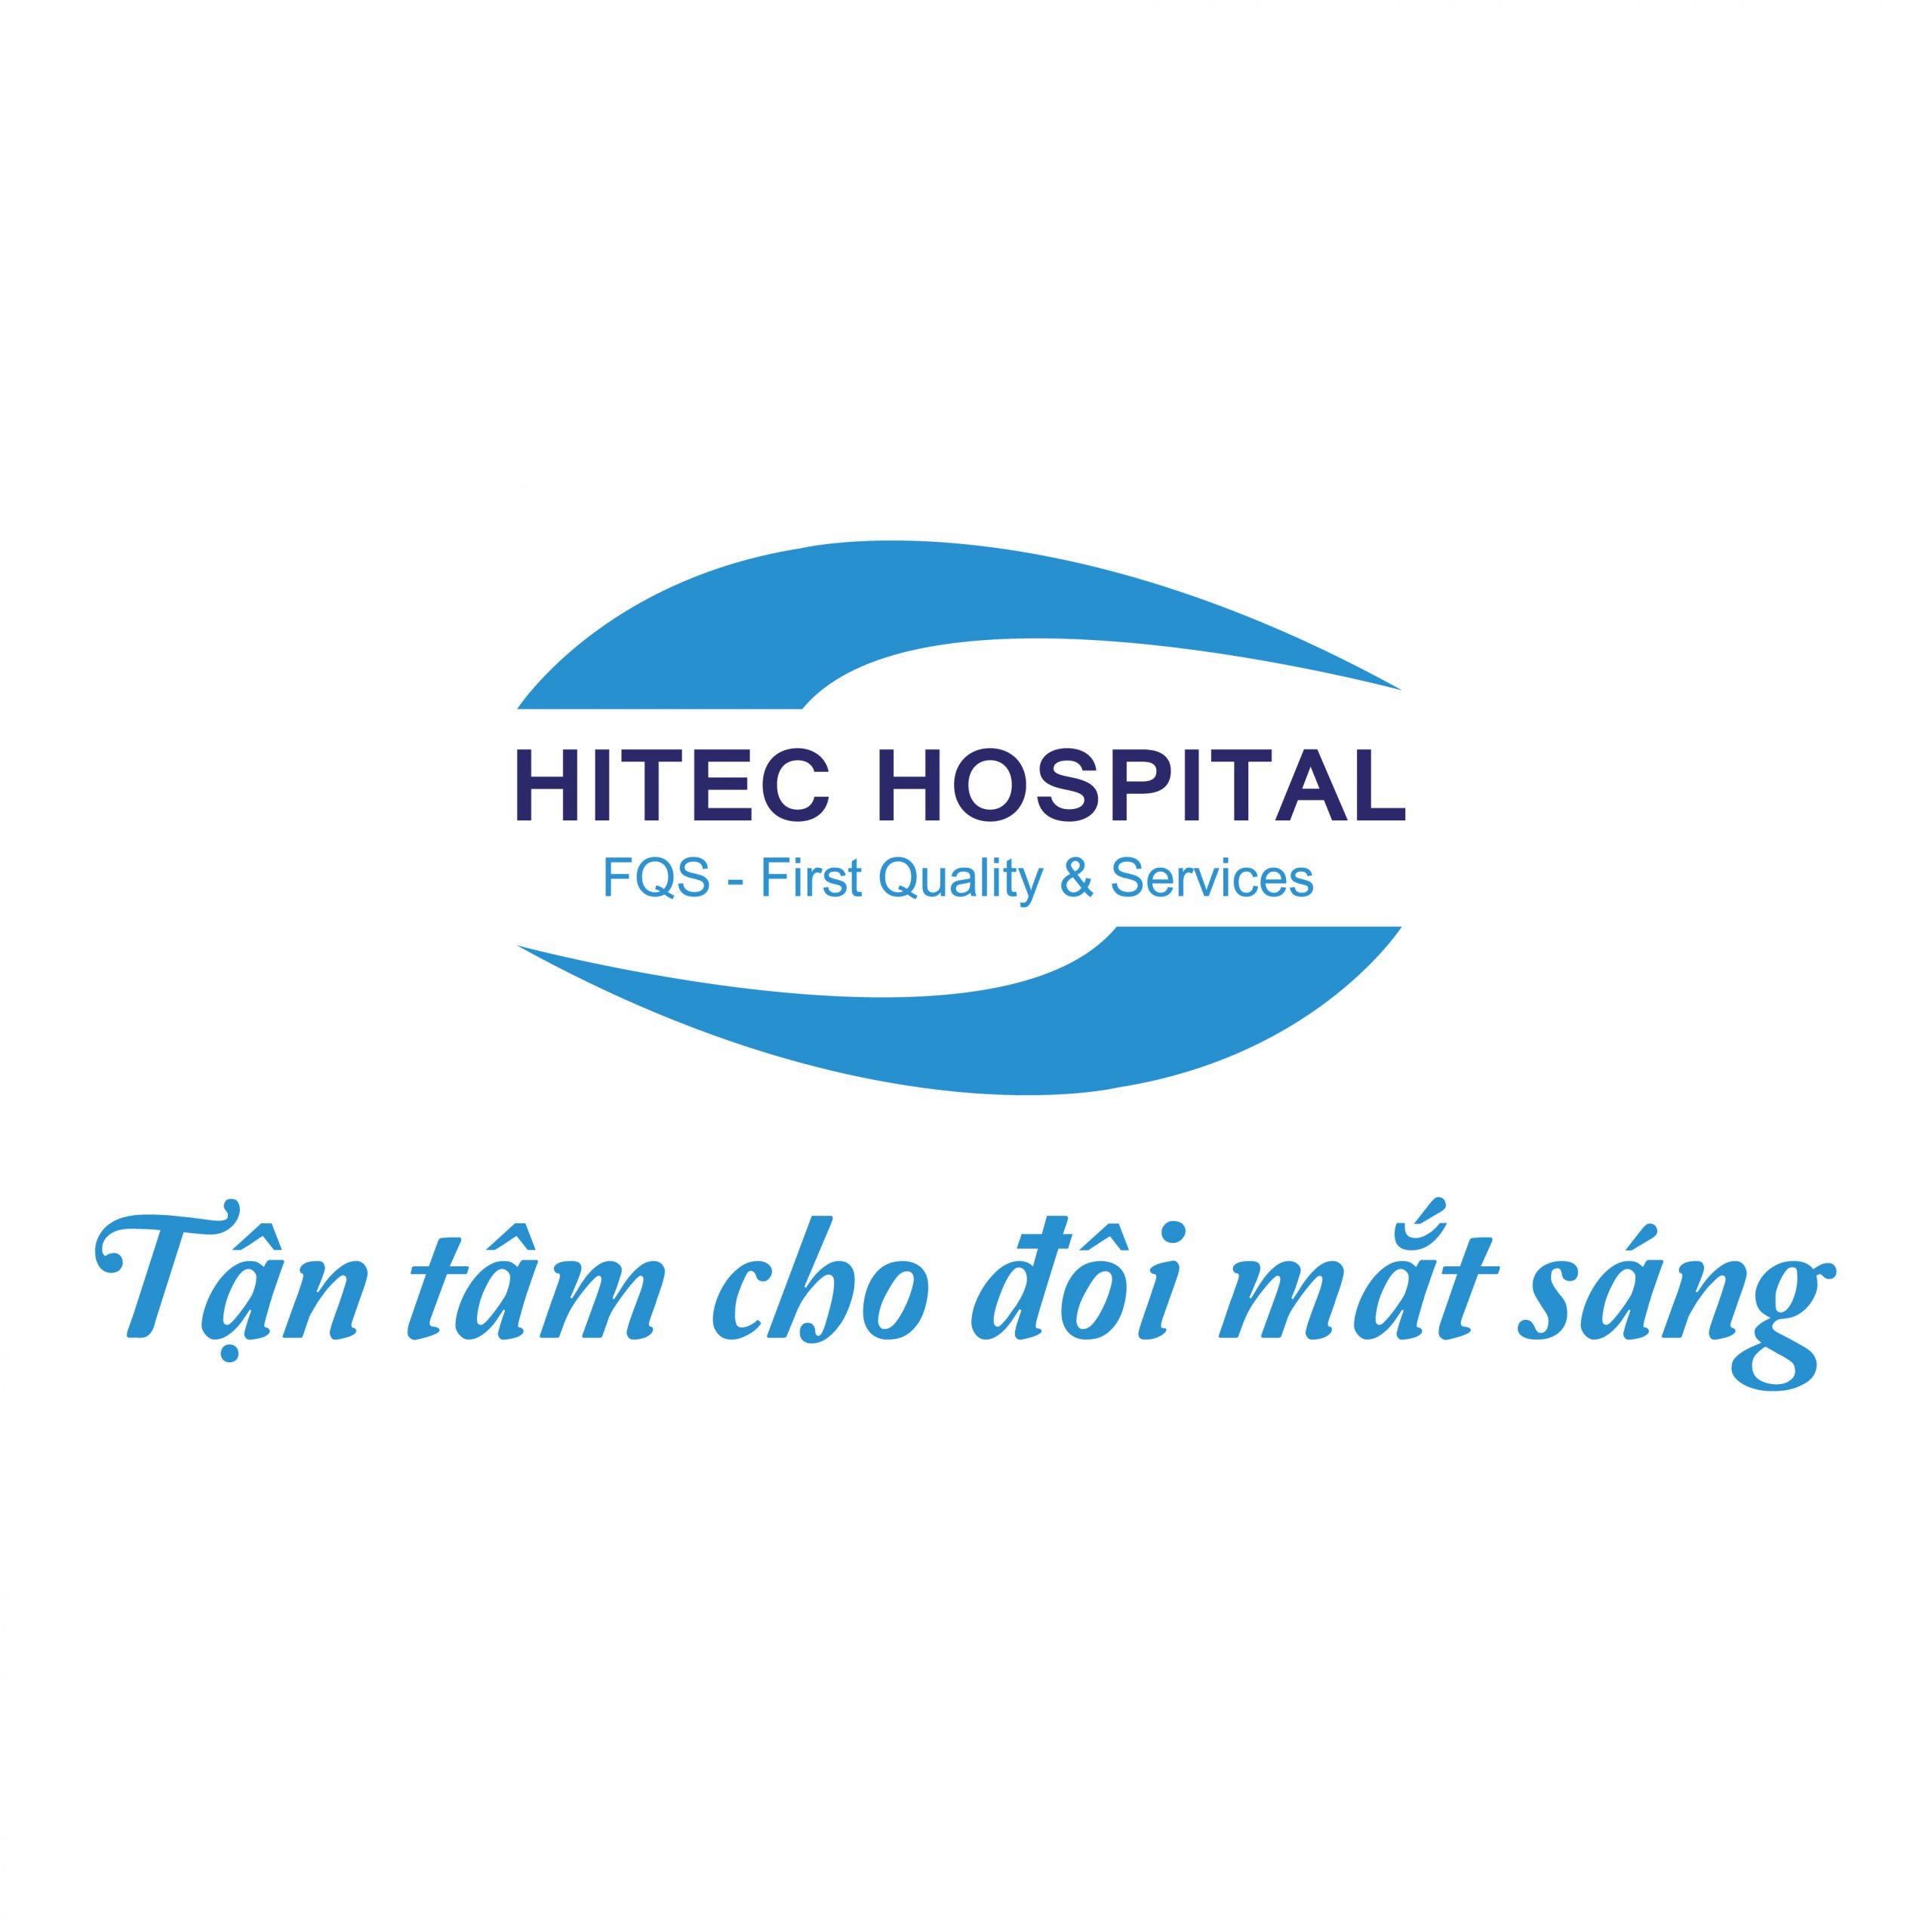 Hệ thống Bệnh viện Mắt HITEC – Đặt lịch khám ưu tiên với bác sỹ nhãn khoa đầu ngành